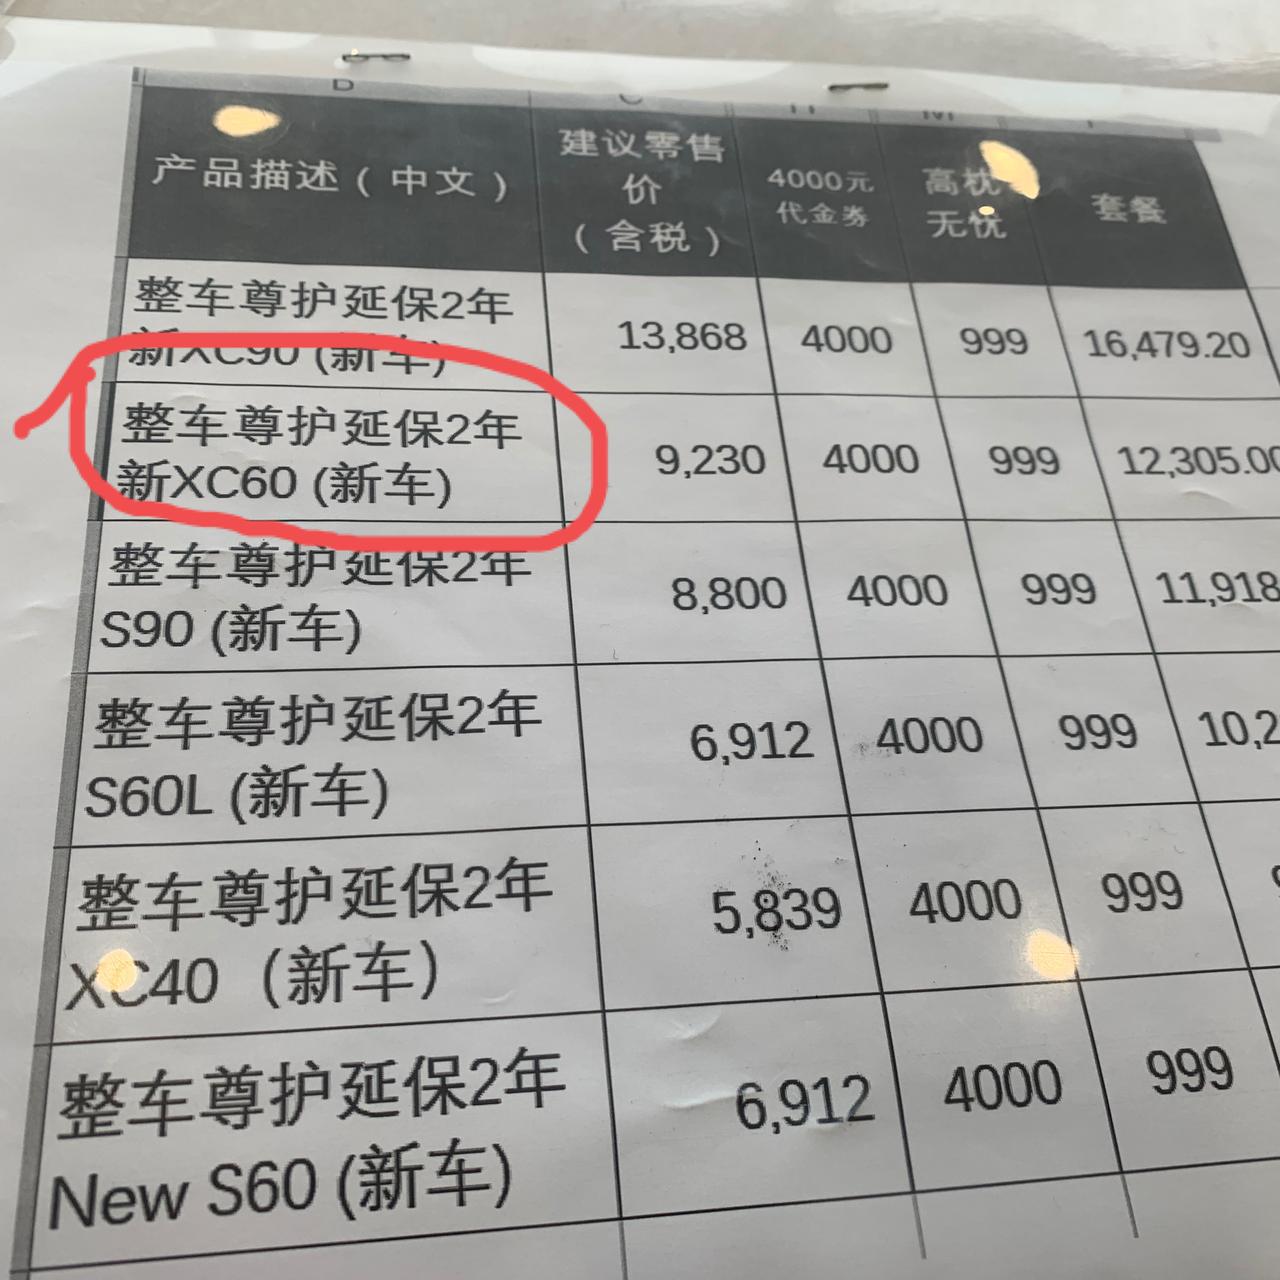 沃尔沃XC60  沃尔沃原厂延保2年。8000多，9000块钱。有必要购买么